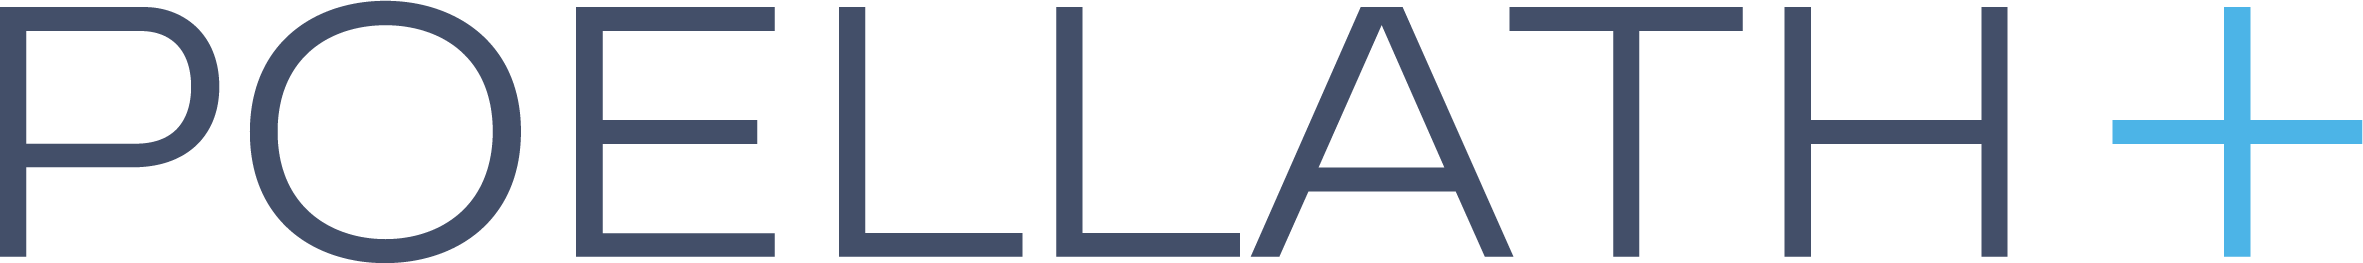 Poellath logo